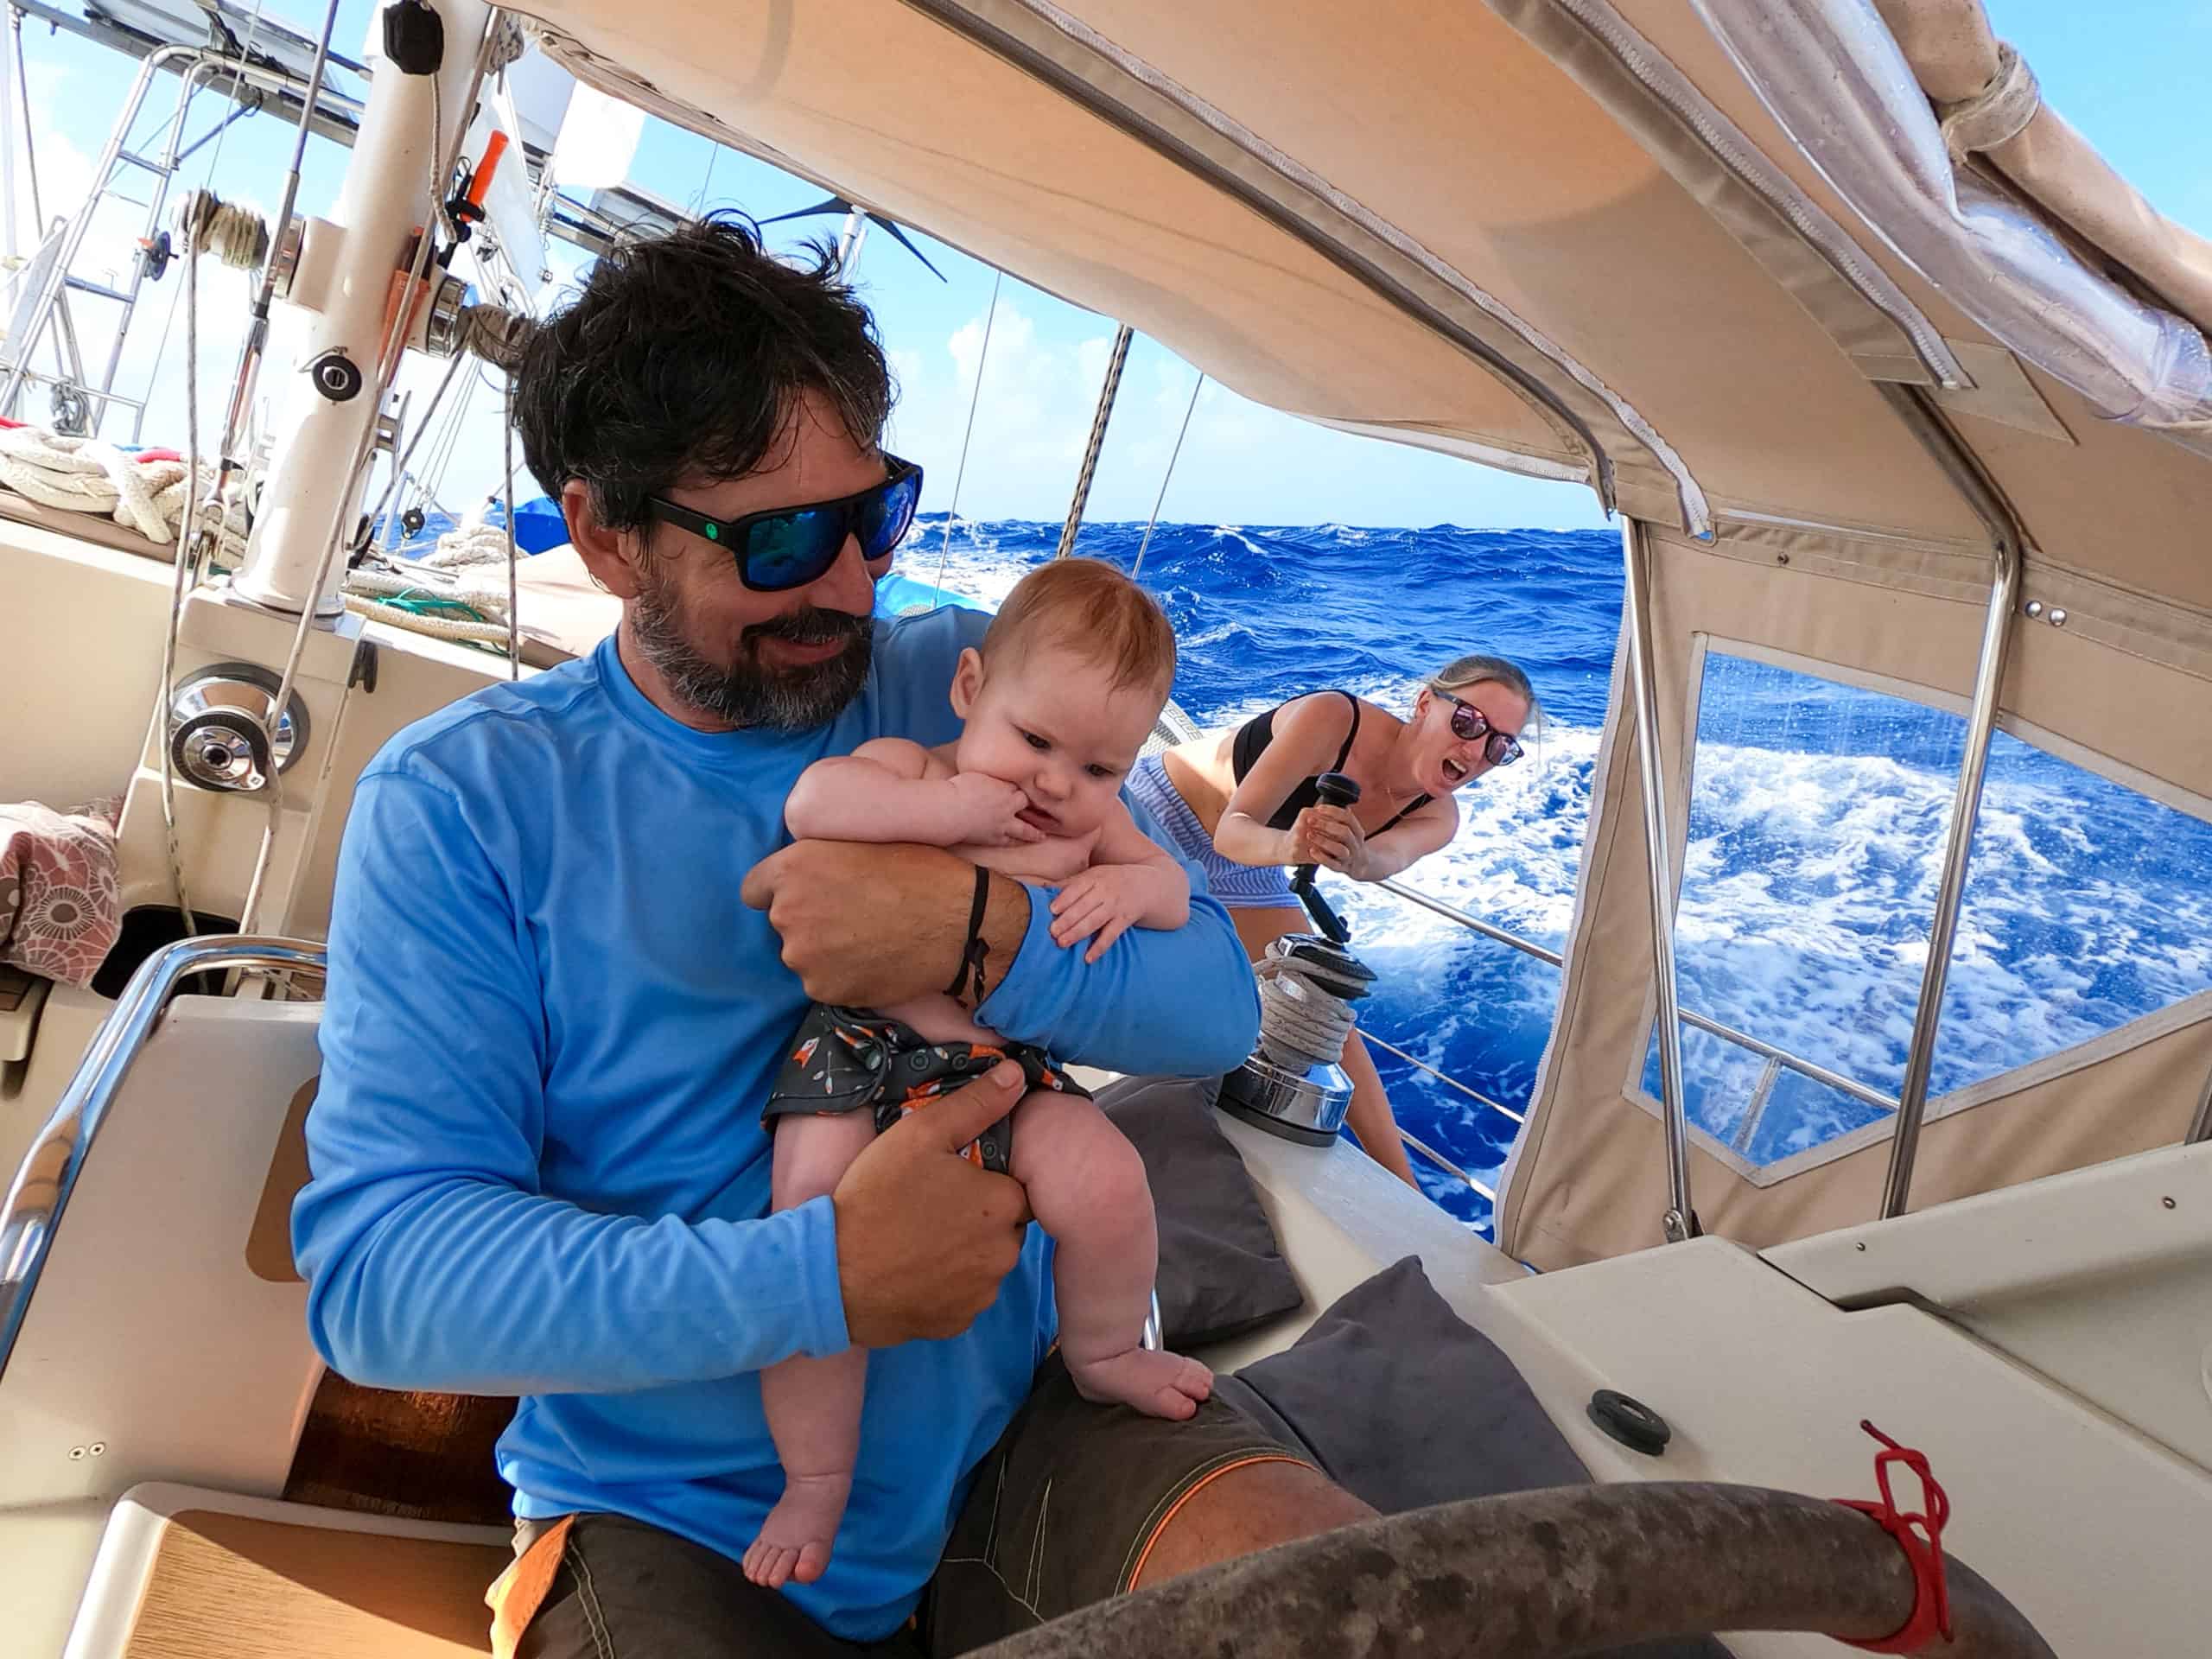 Brian holding Sierra while Karin sails their sailboat